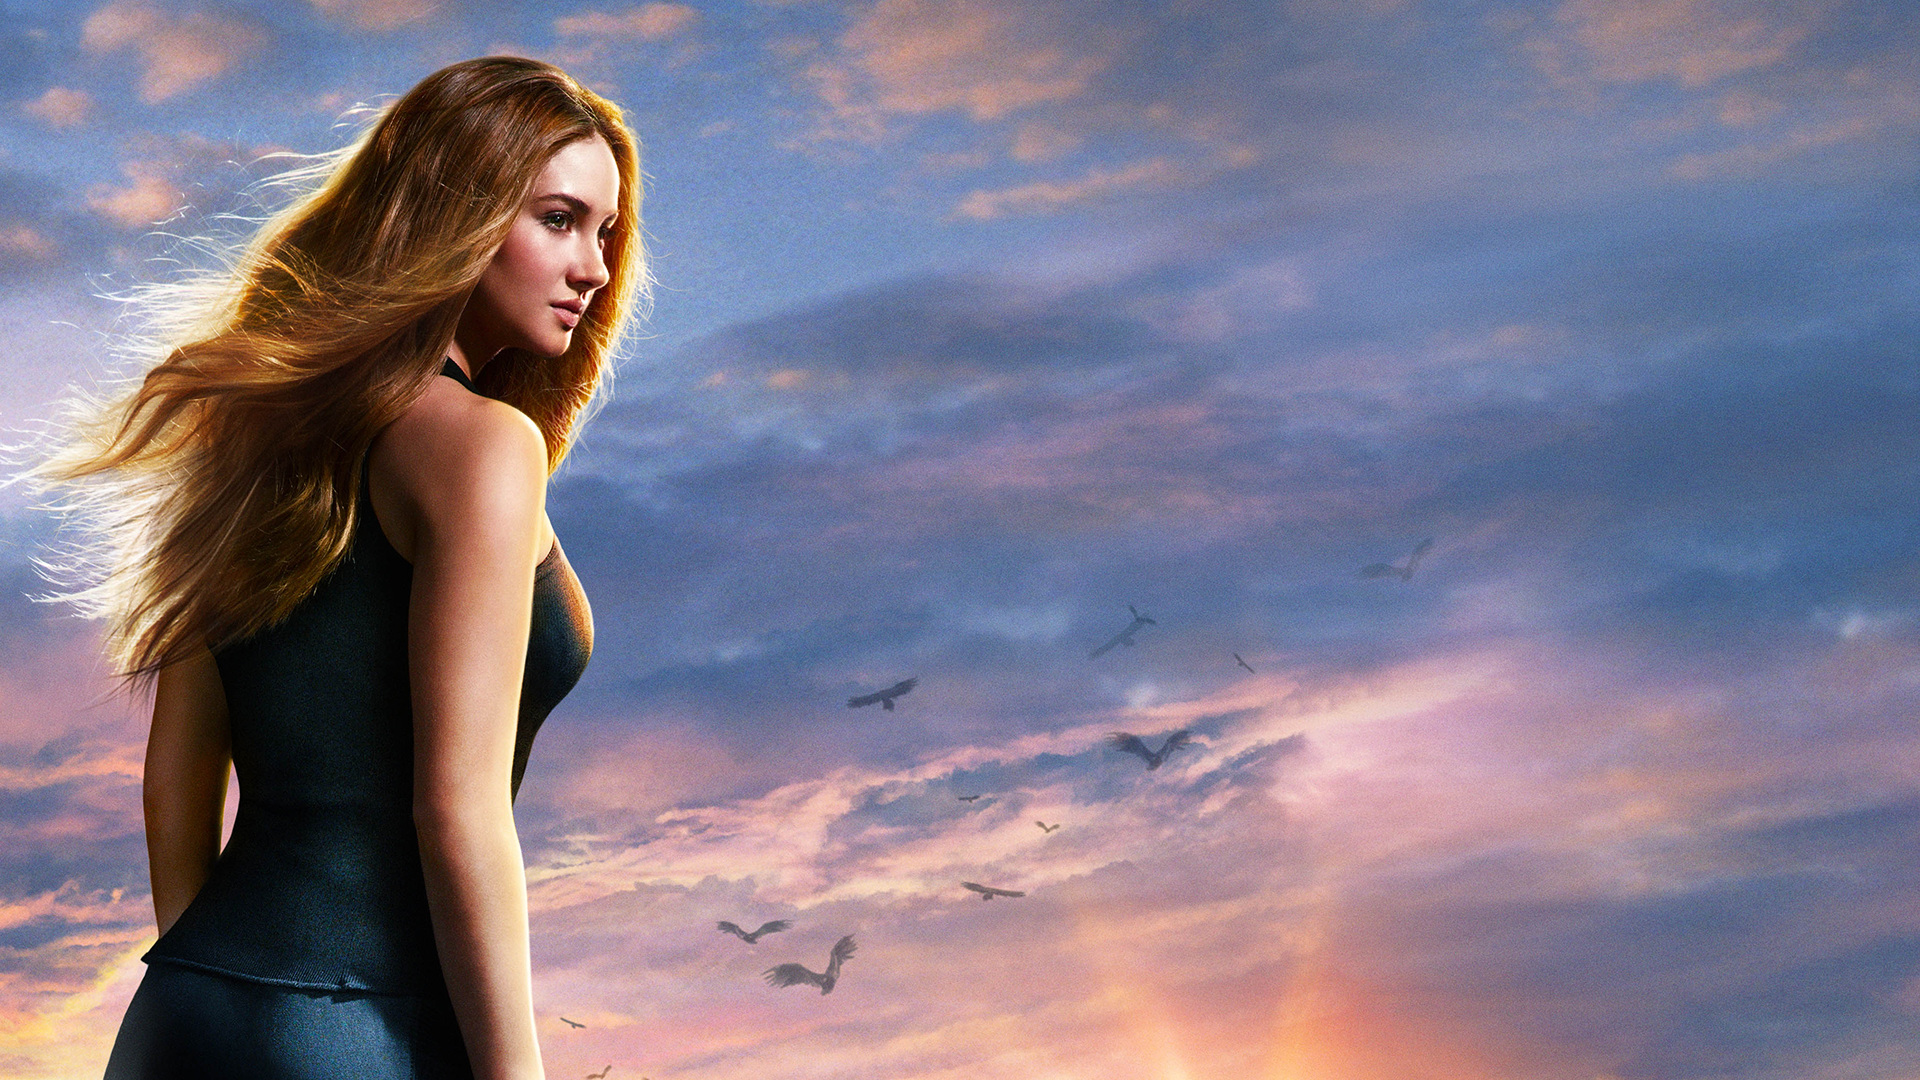 Movie Divergent HD Wallpaper | Background Image